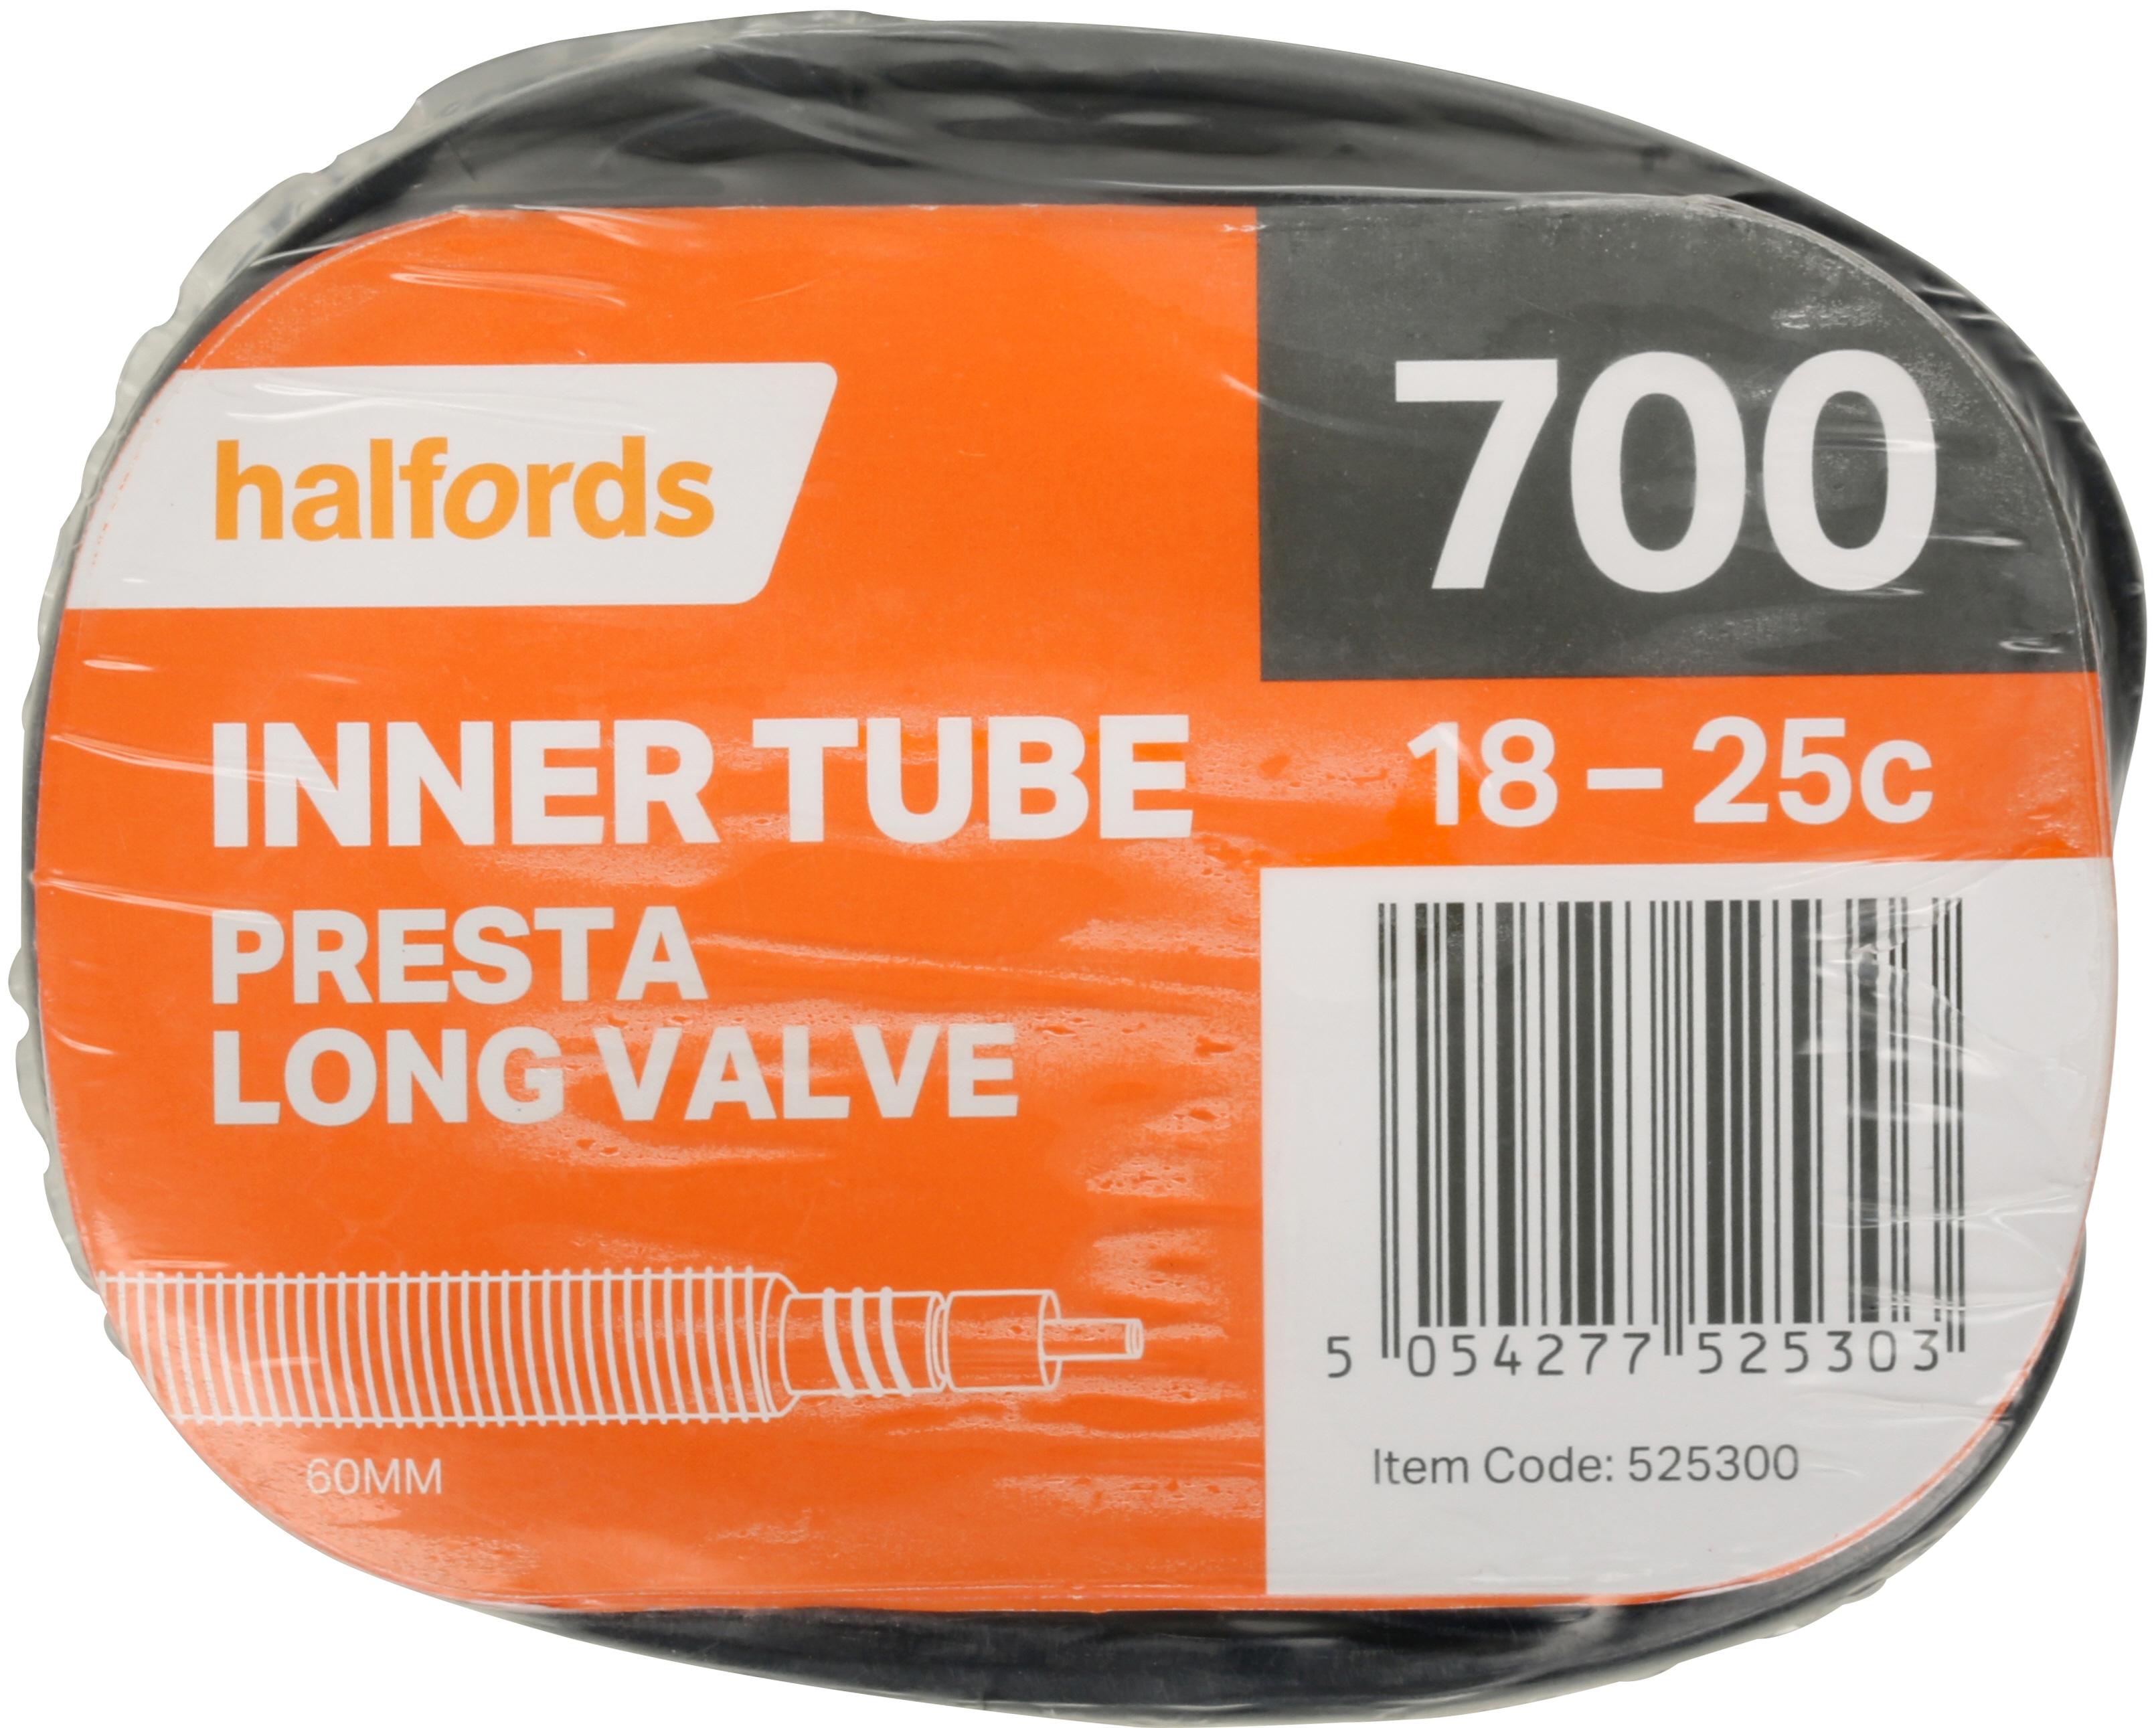 Halfords Presta Bike Inner Tube, 700C X 18 - 25C, Long Valve